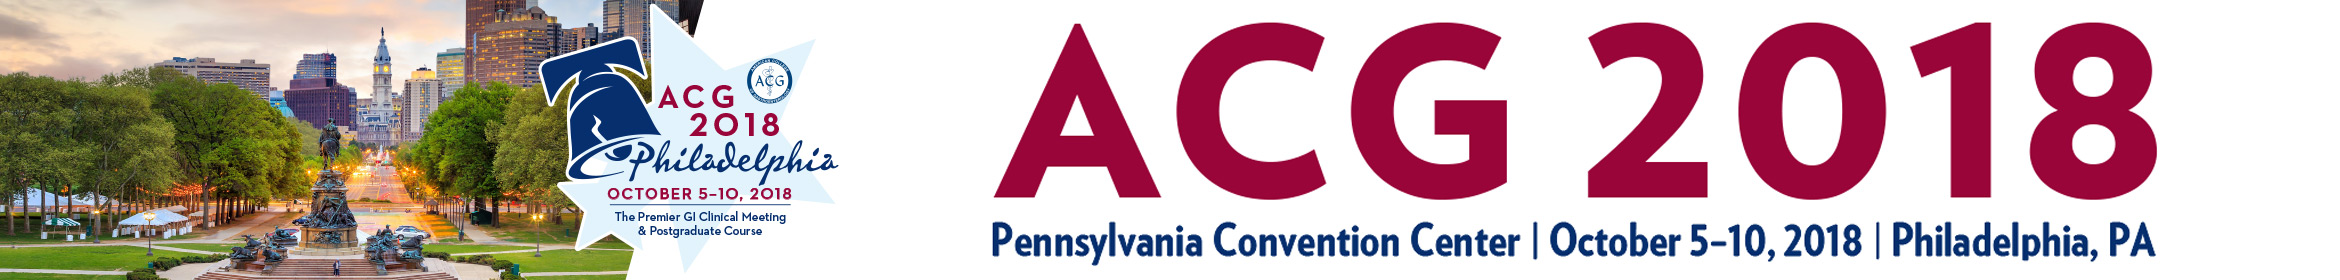 ACG 2018 Annual Meeting Main banner